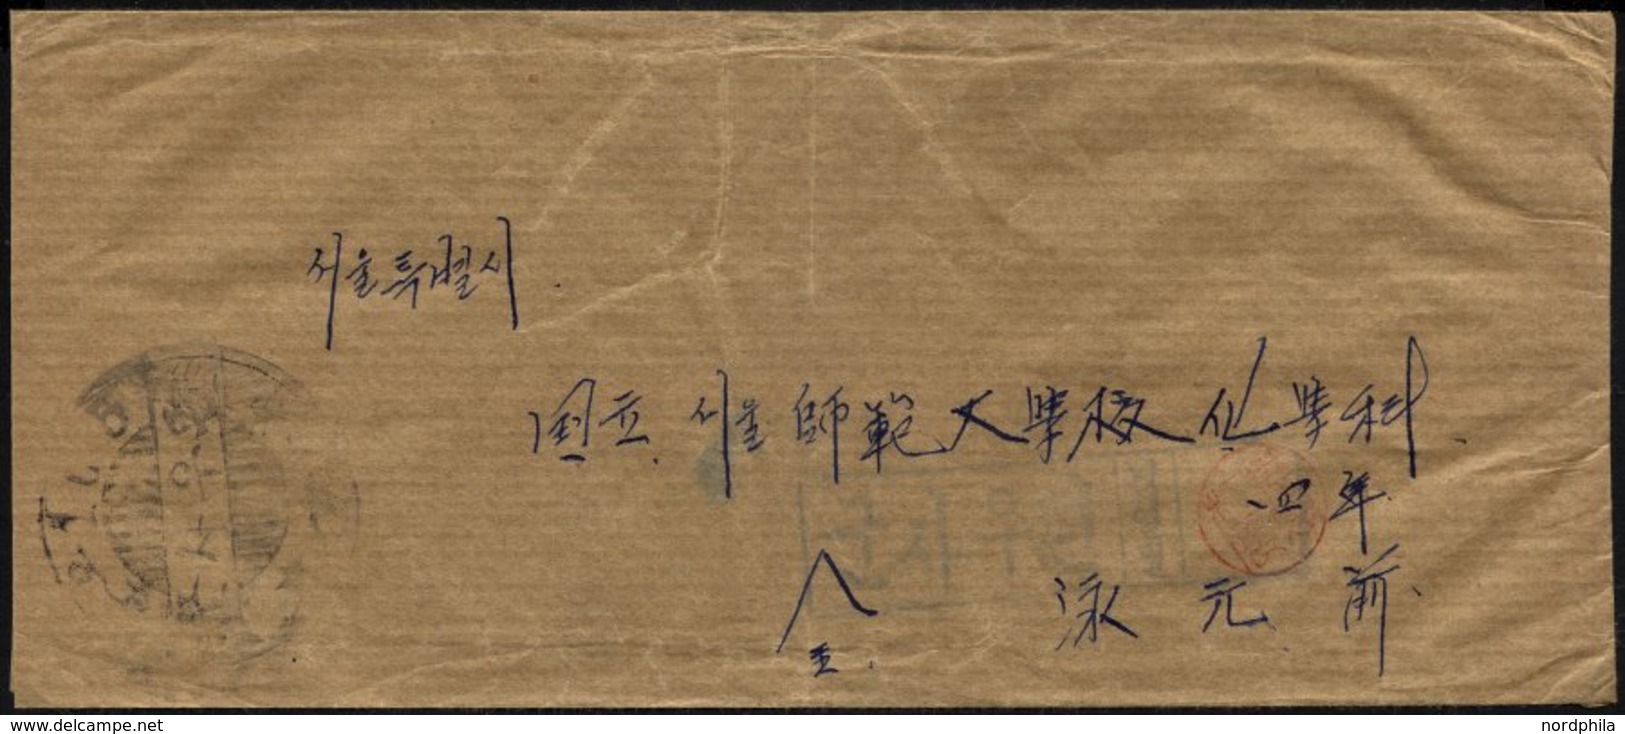 KOREA-SÜD 1950, Feldpostbrief Mit Stempel Vom Feldpostamt 101, Pracht - Corea Del Sur